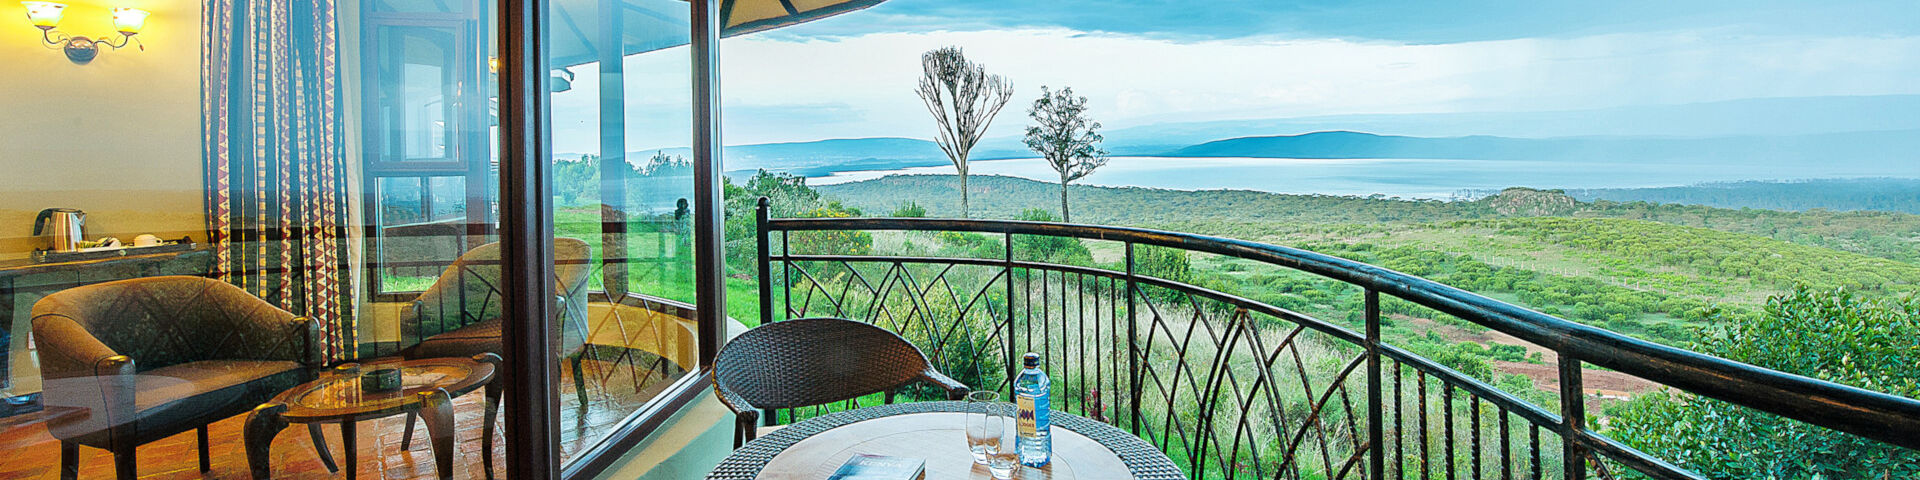 Accommodation in Lake Nakuru and Lake Naivasha Kenya View of Hills and Lake